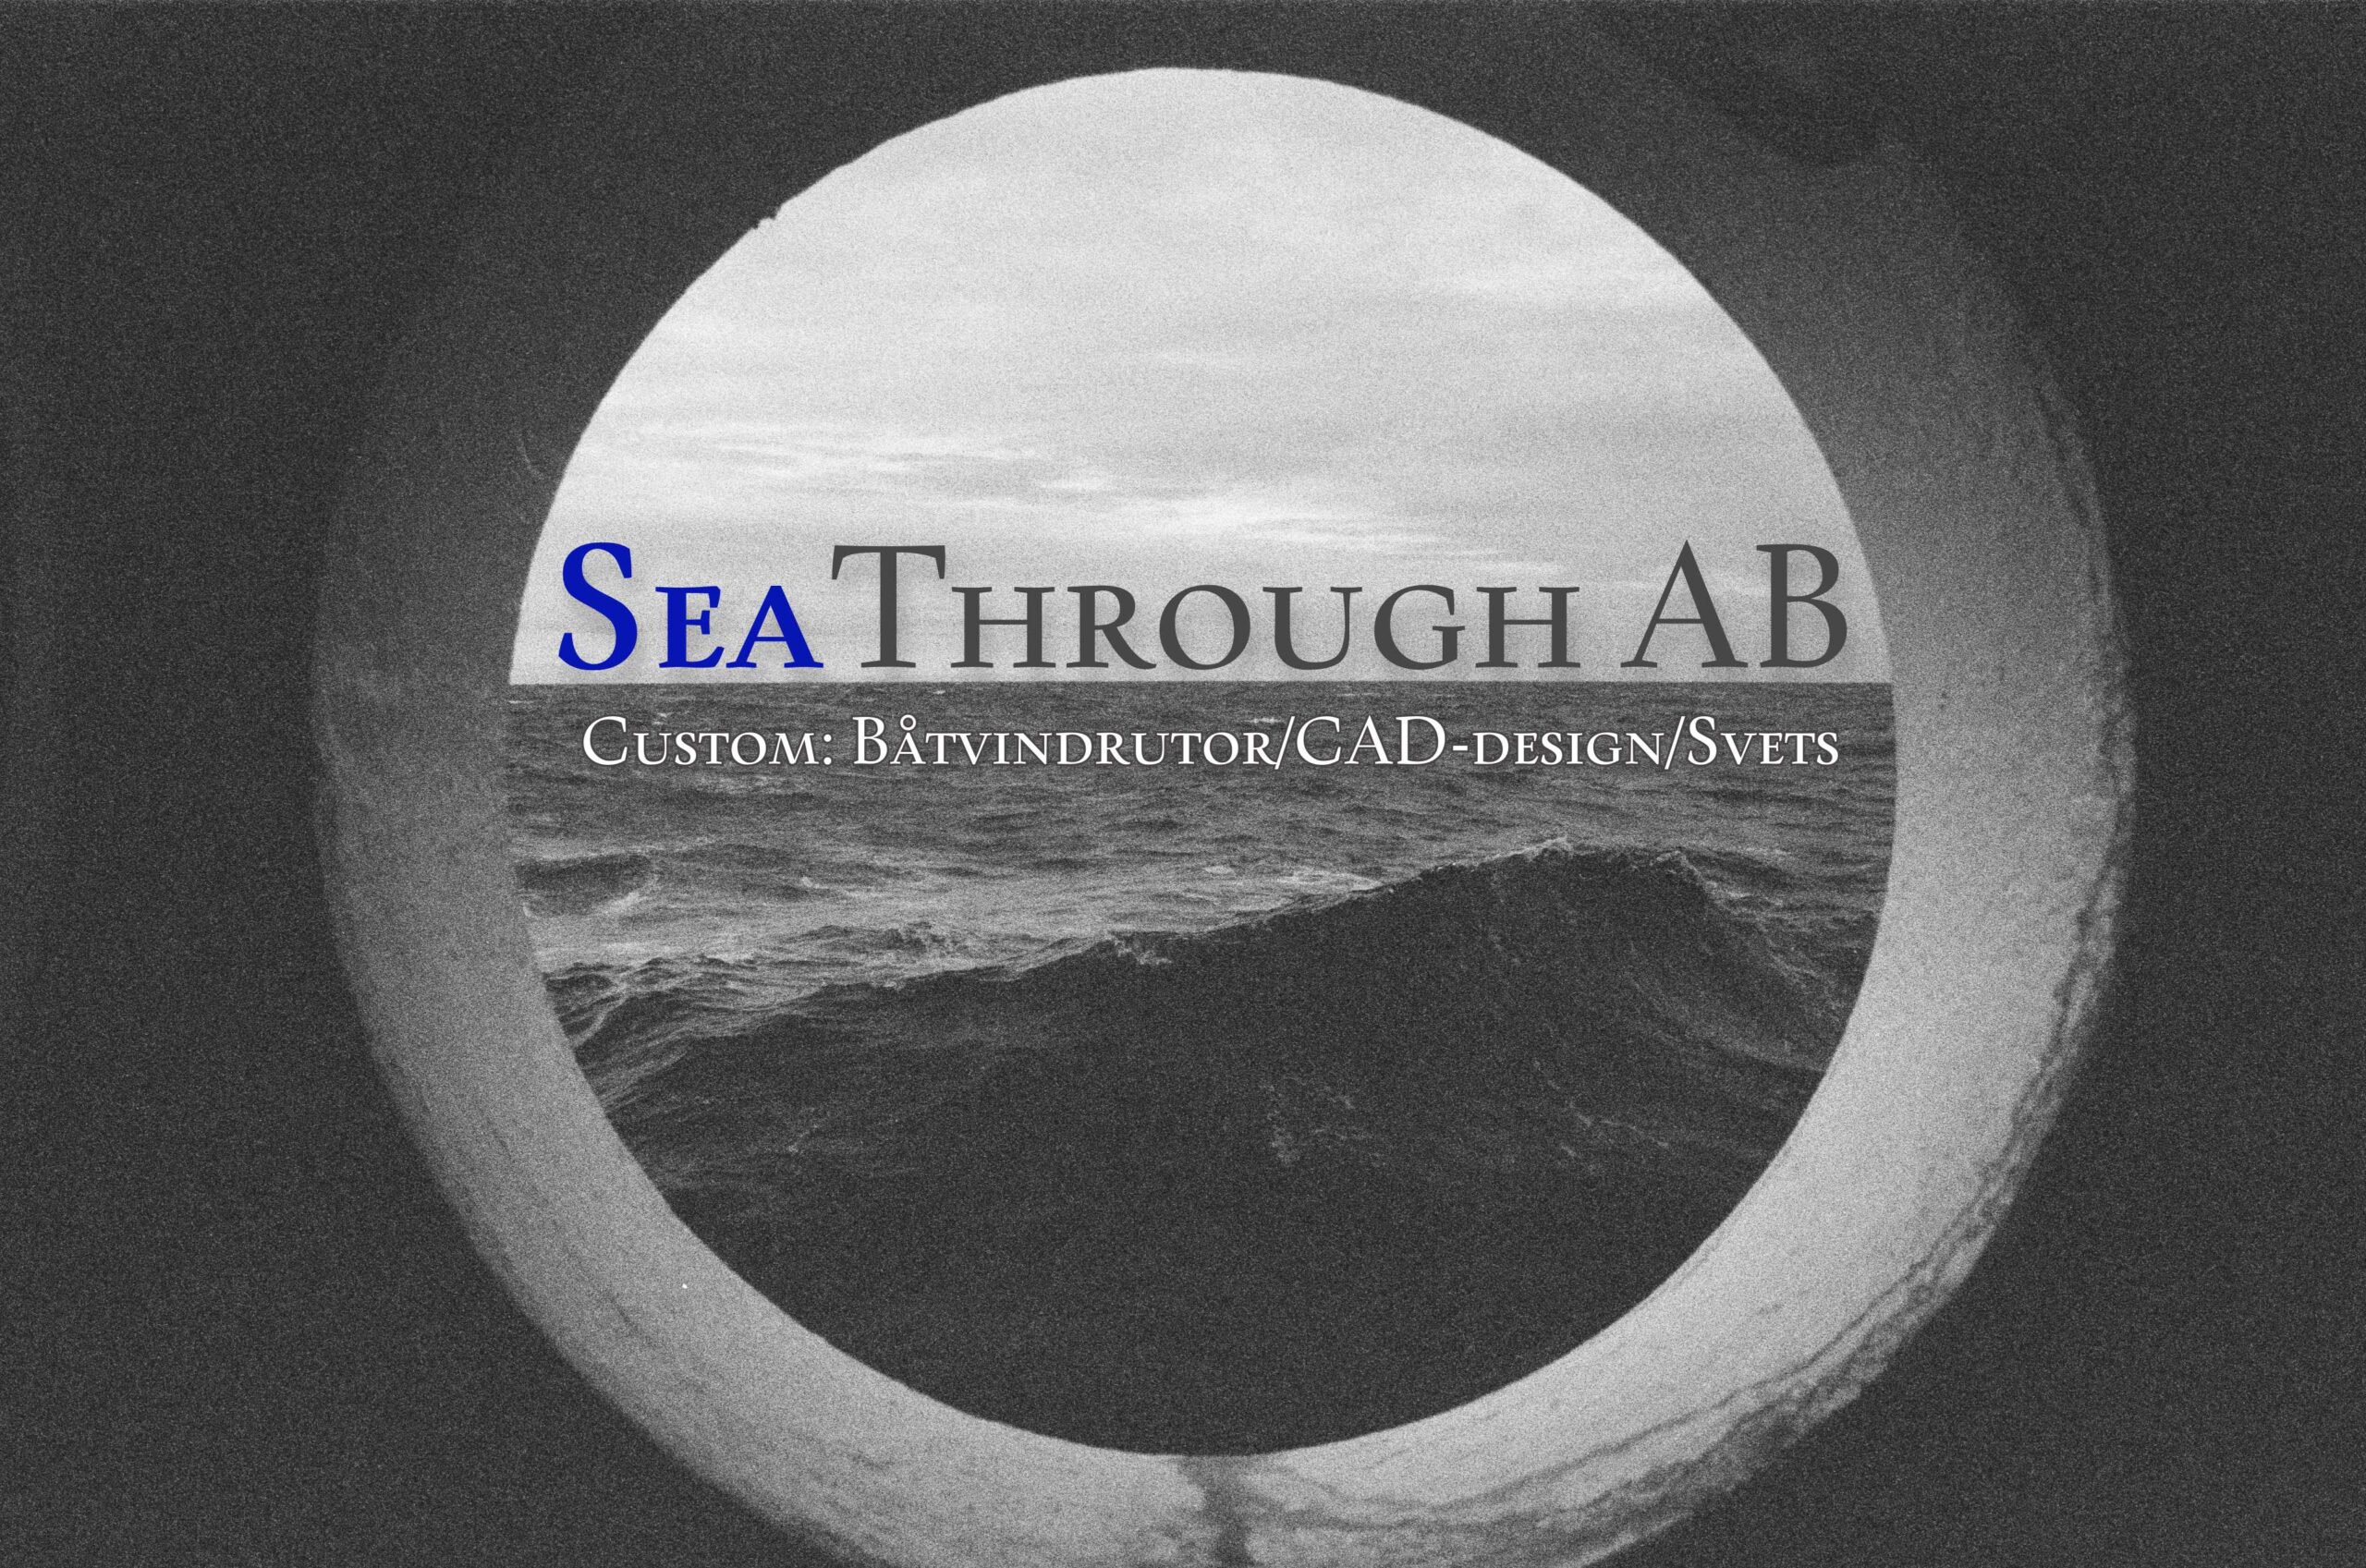 Logga med texten
SeaThrough AB
Custom: Båtvindrutor/CAD-design/svets